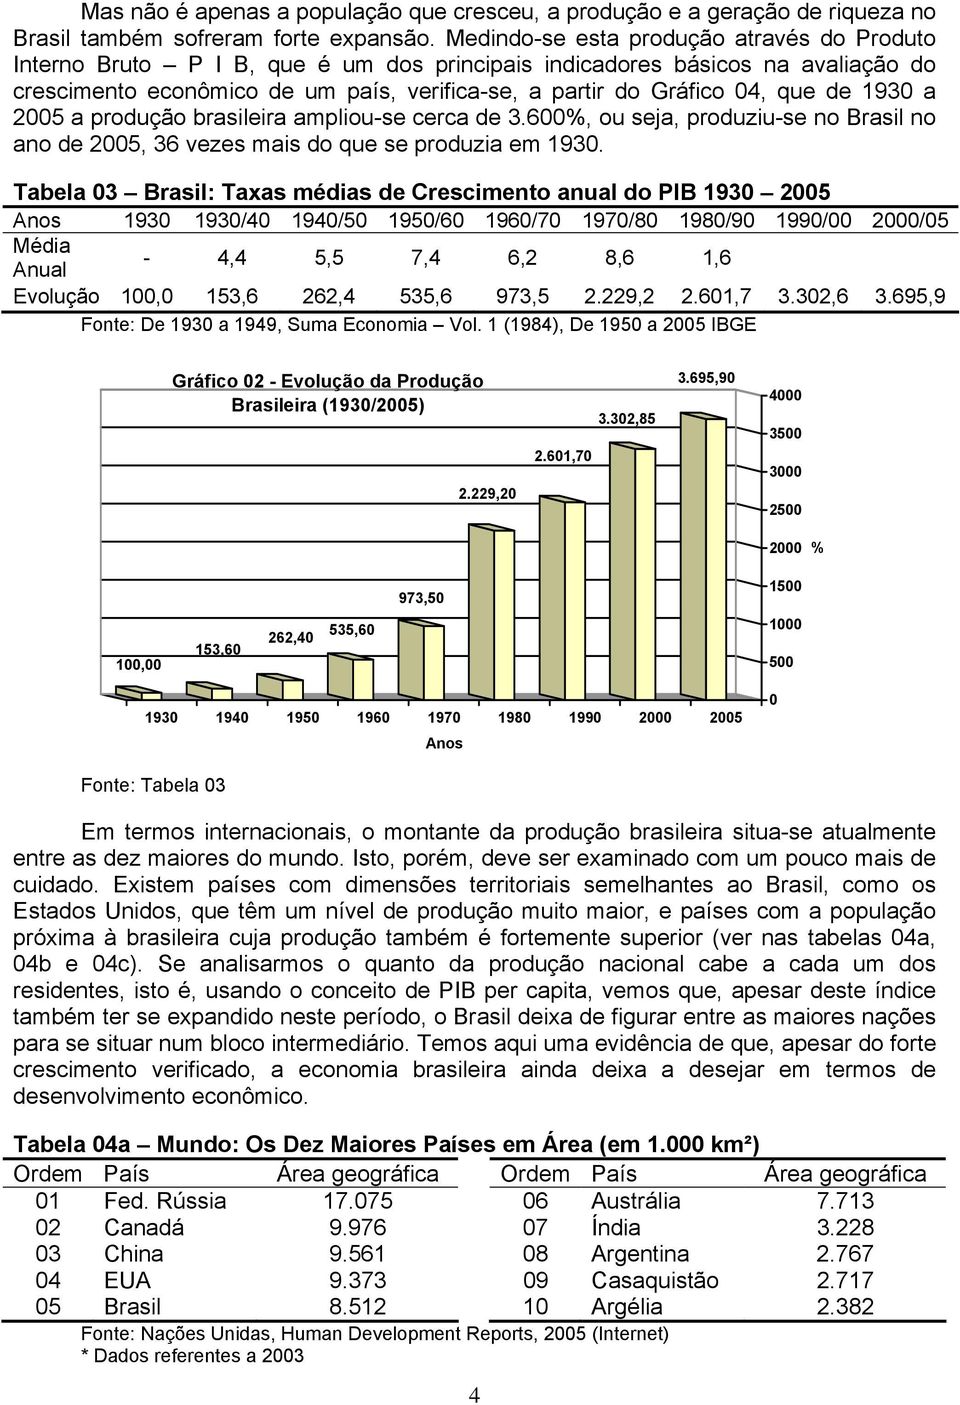 de 1930 a 2005 a produção brasileira ampliou-se cerca de 3.600%, ou seja, produziu-se no Brasil no ano de 2005, 36 vezes mais do que se produzia em 1930.